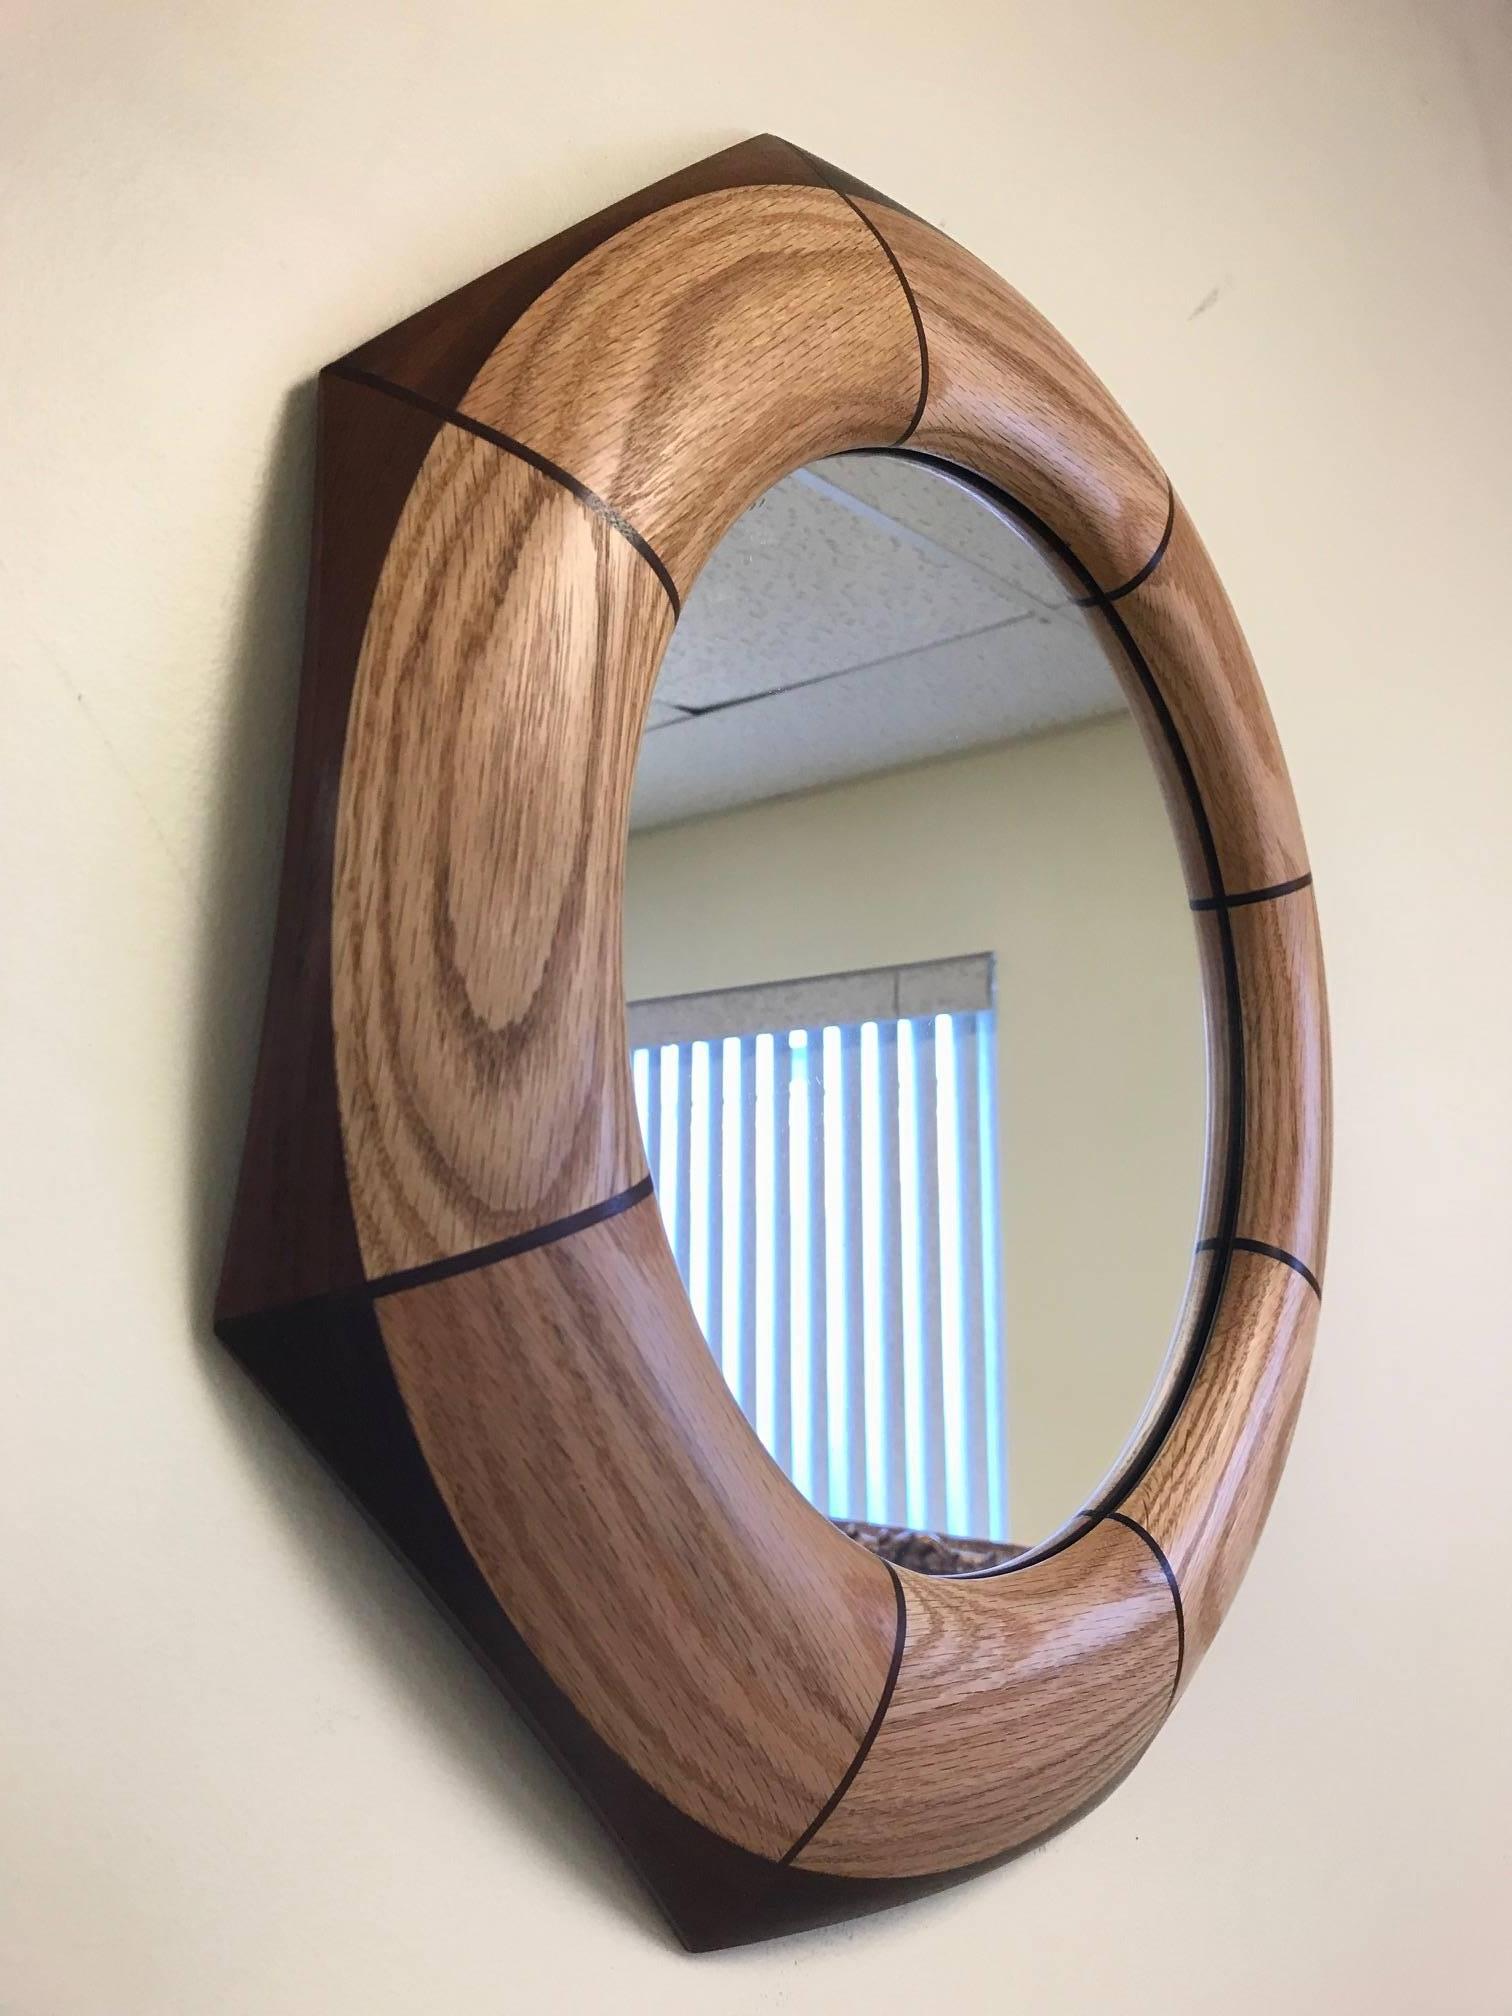 Miroir octogonal personnalisé en noyer et chêne incrusté.
Le miroir répertorié est actuellement disponible.